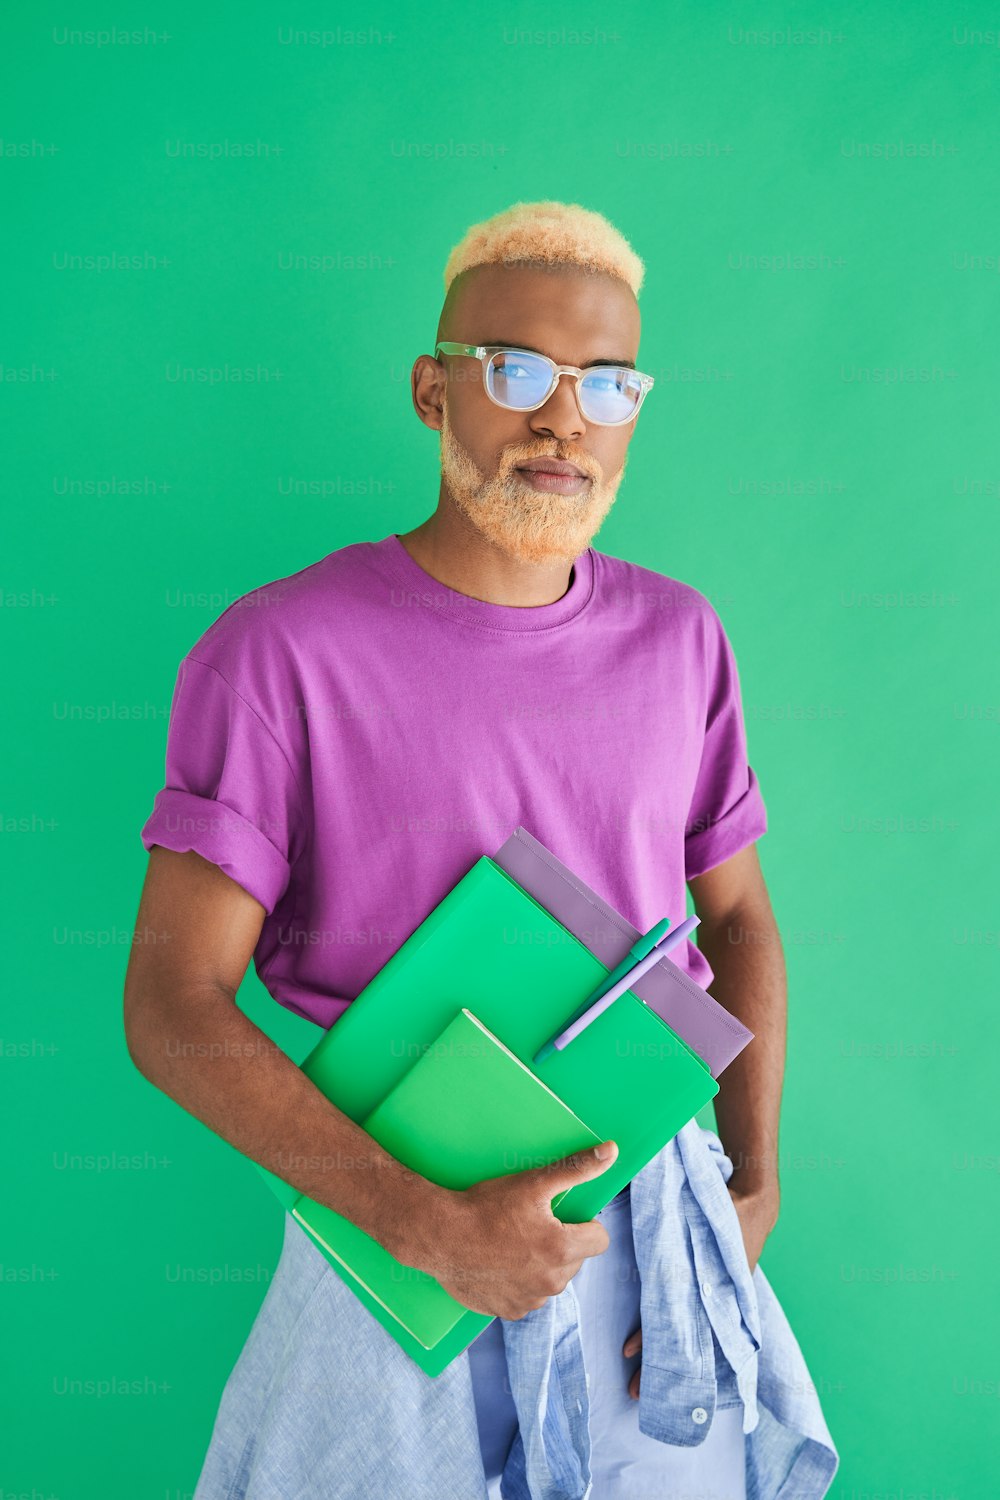 Indo para o trabalho. Foto vertical do homem loiro multirracial usando óculos segurando pastas e caderno enquanto posava sobre a parede verde